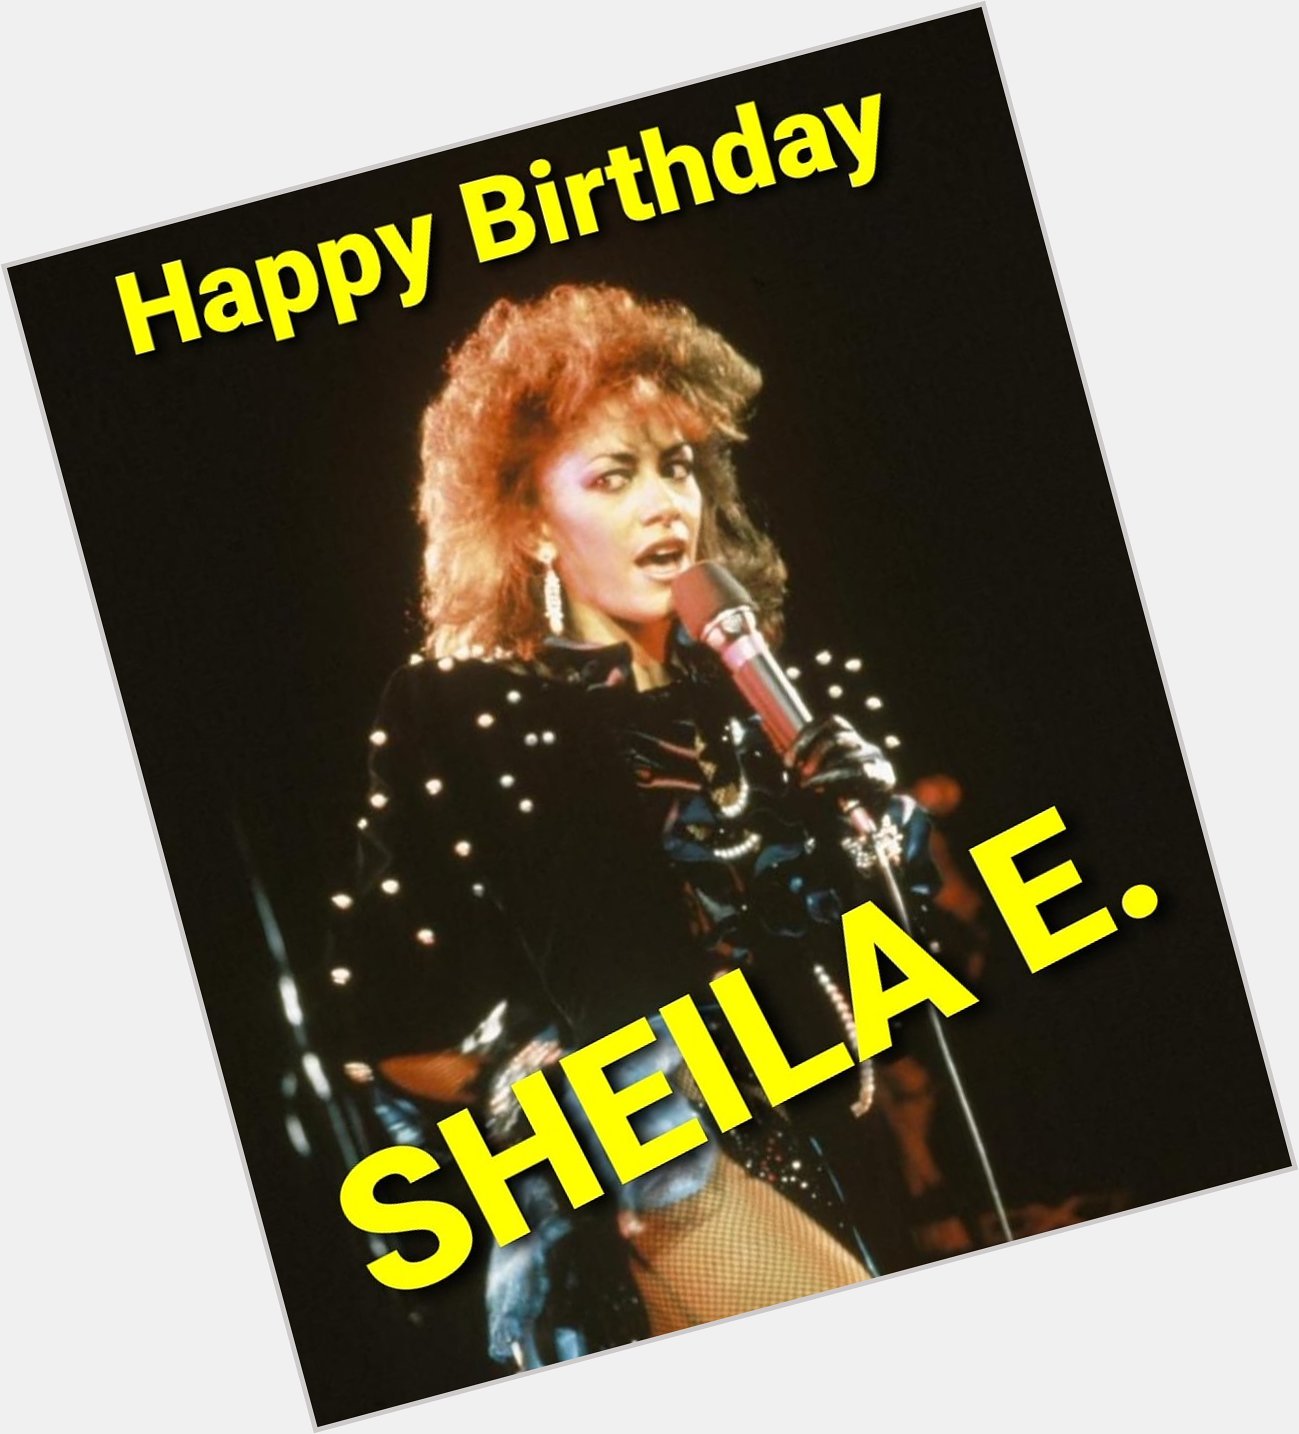 Happy Birthday to my friend SHEILA E. Love you always. 